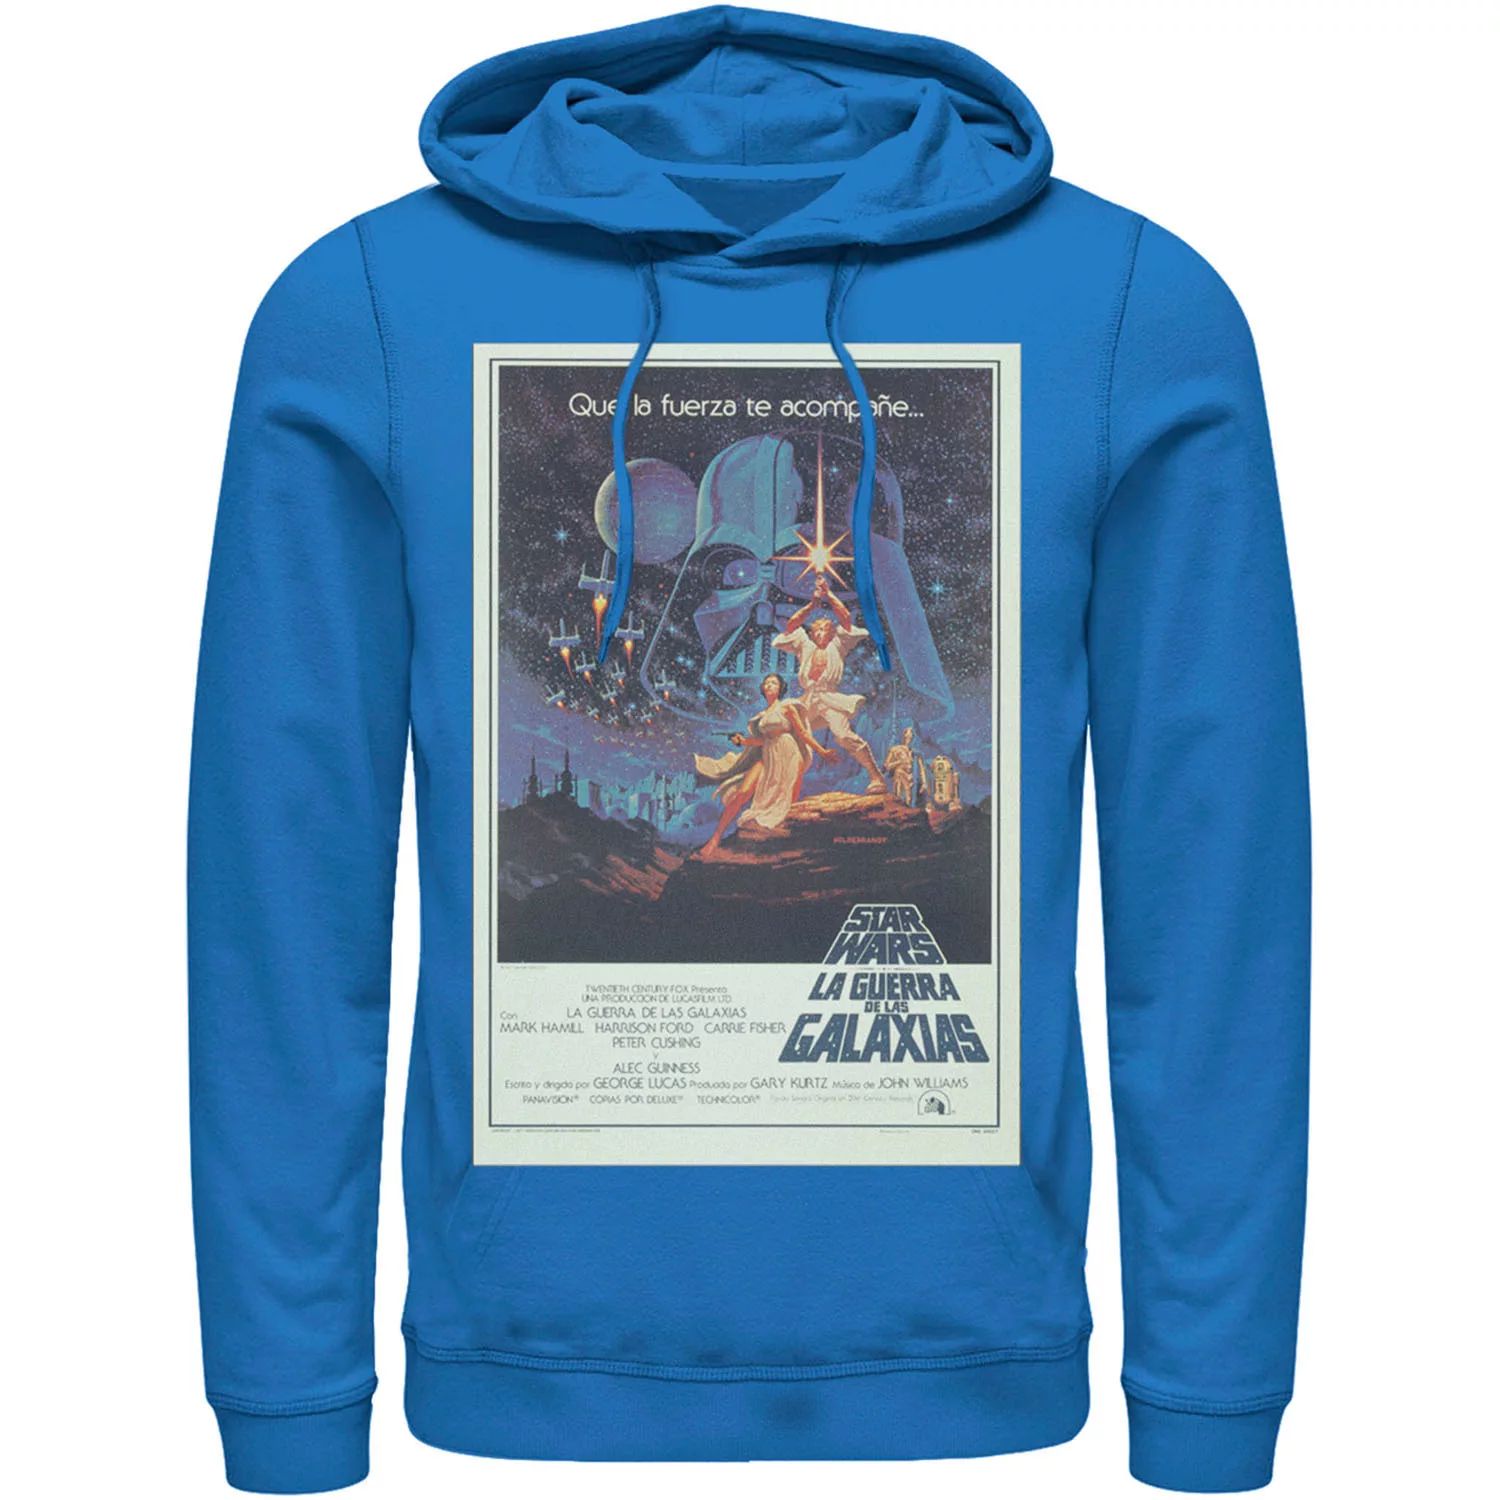 цена Мужская винтажная толстовка с портретом и постером фильма Star Wars